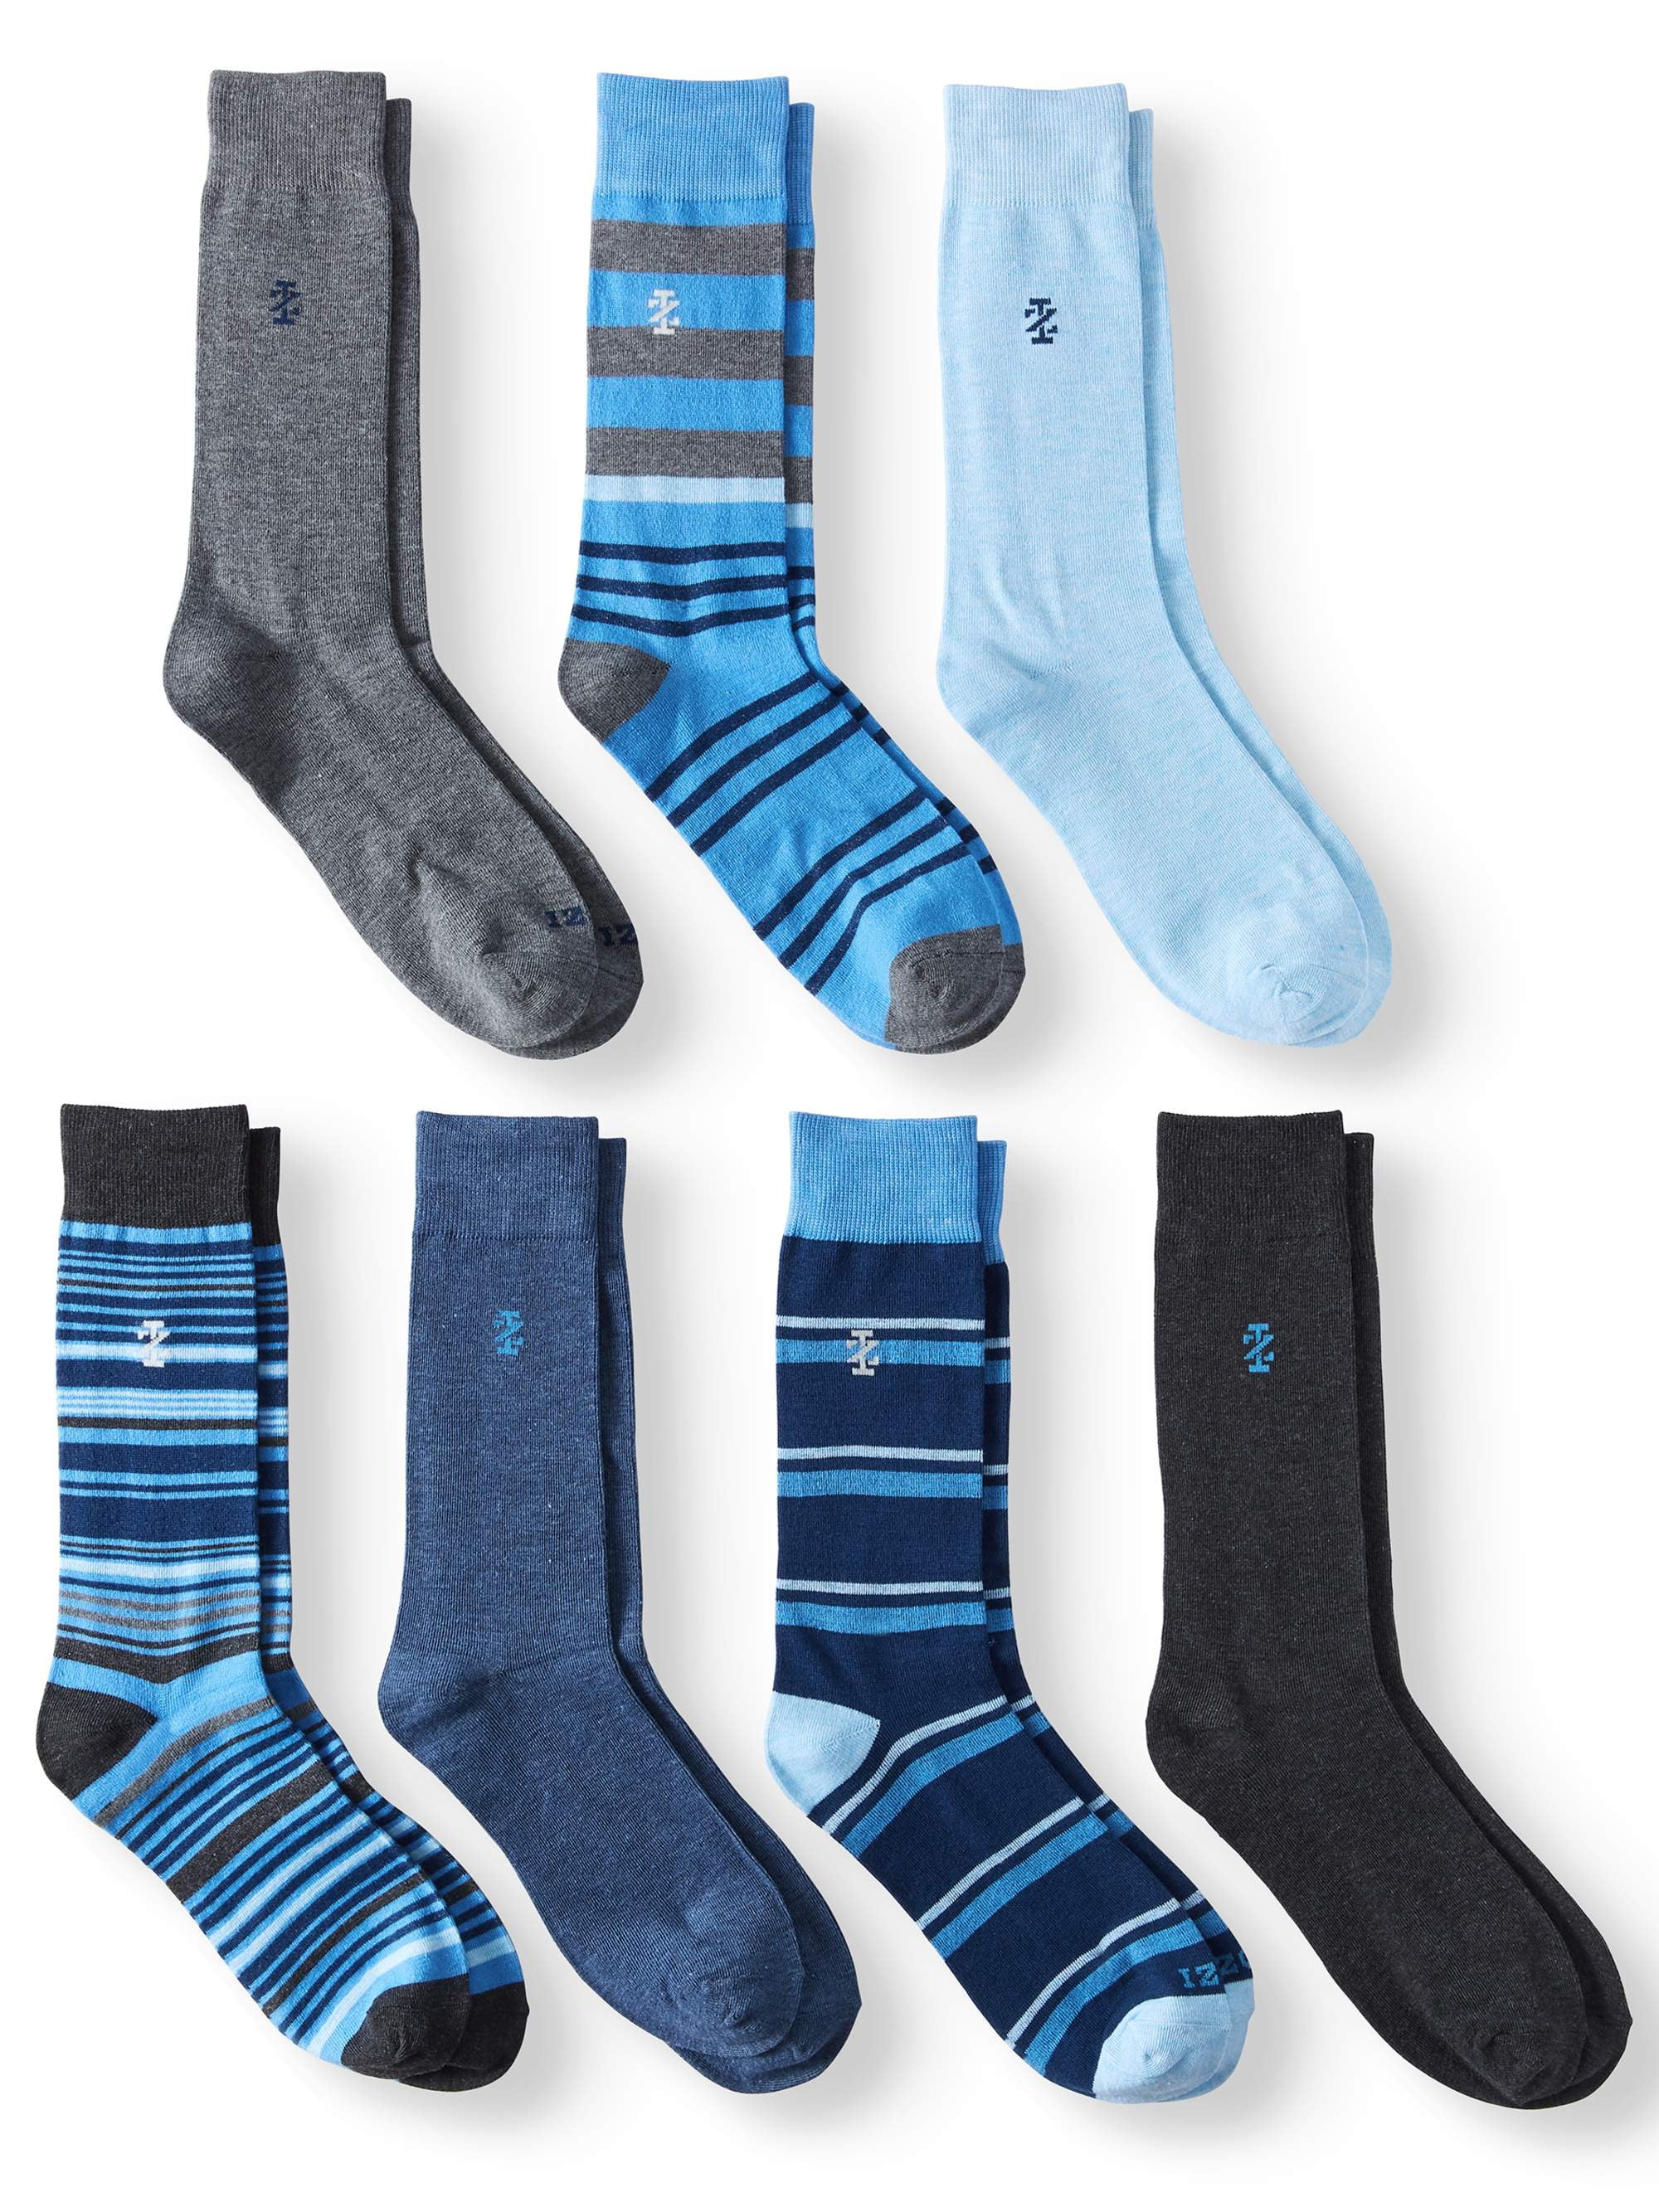 IZOD - Men's Dress Socks, 7 Pairs - Walmart.com - Walmart.com